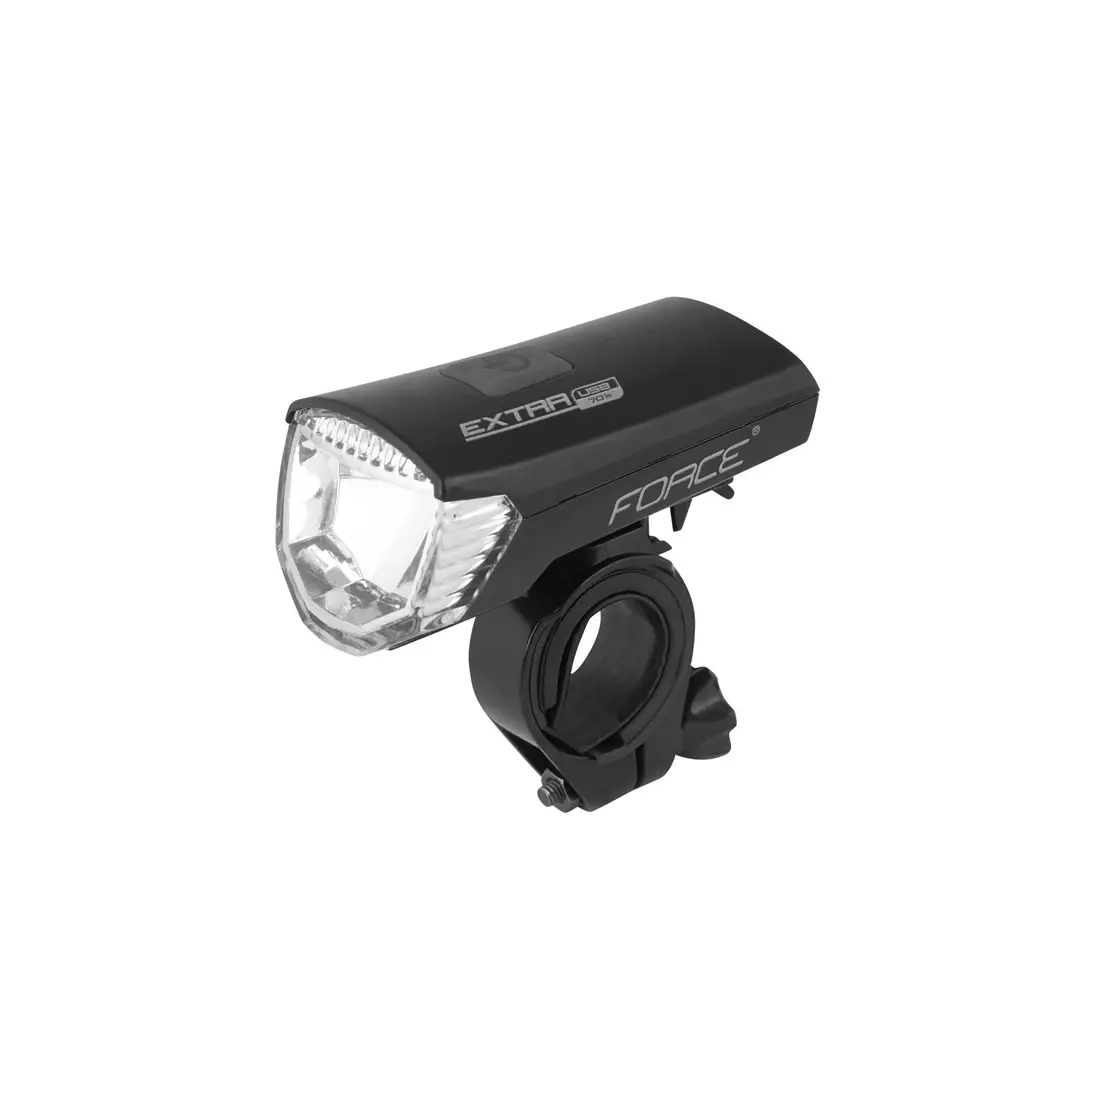 FORCE EXTRA - 45150 - USB přední světlo, LED, 70 lumenů